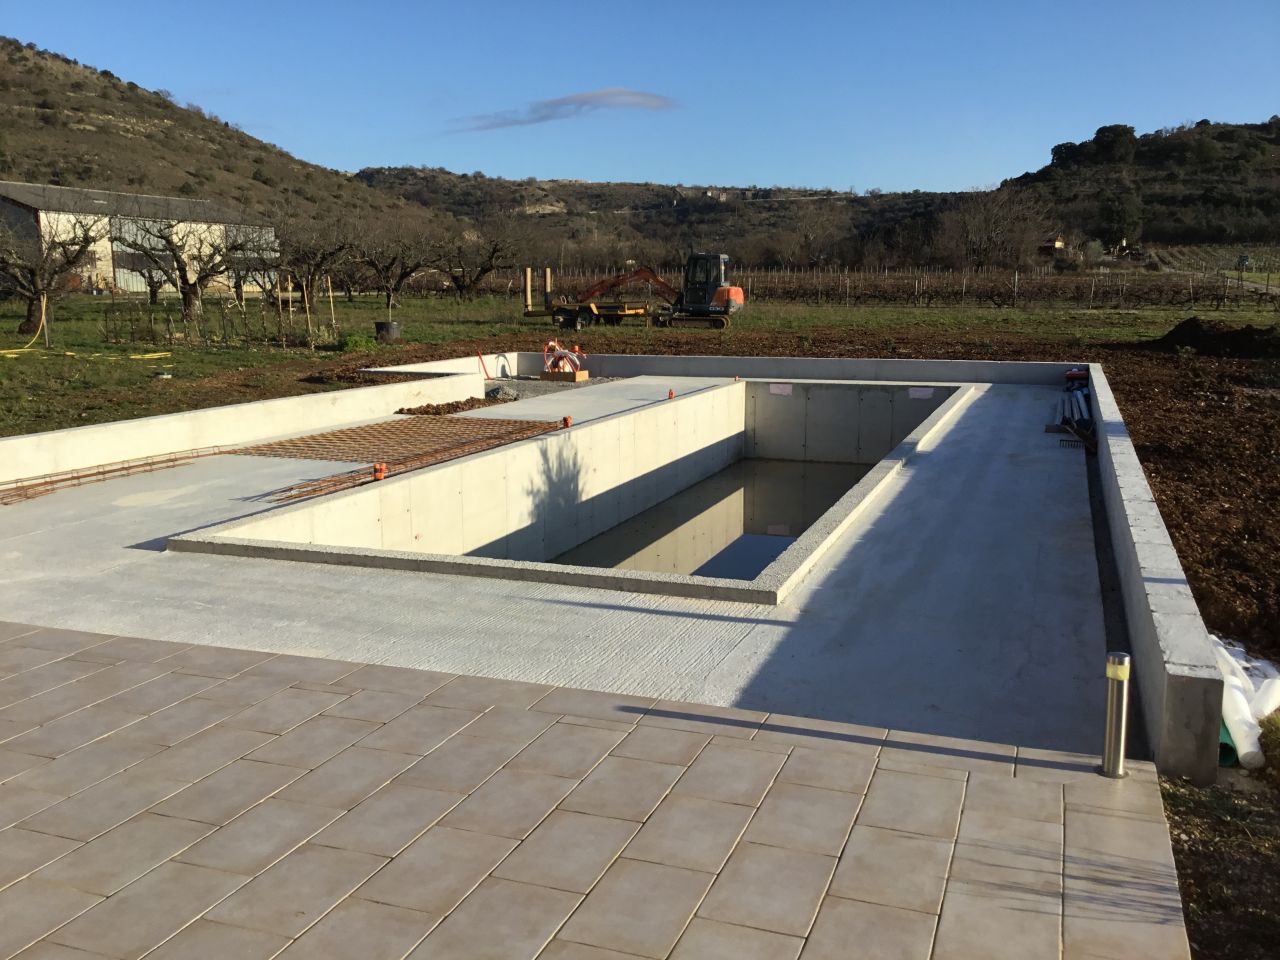 Le 6 janvier 2019 : perspective de la piscine vue de la terrasse maison.